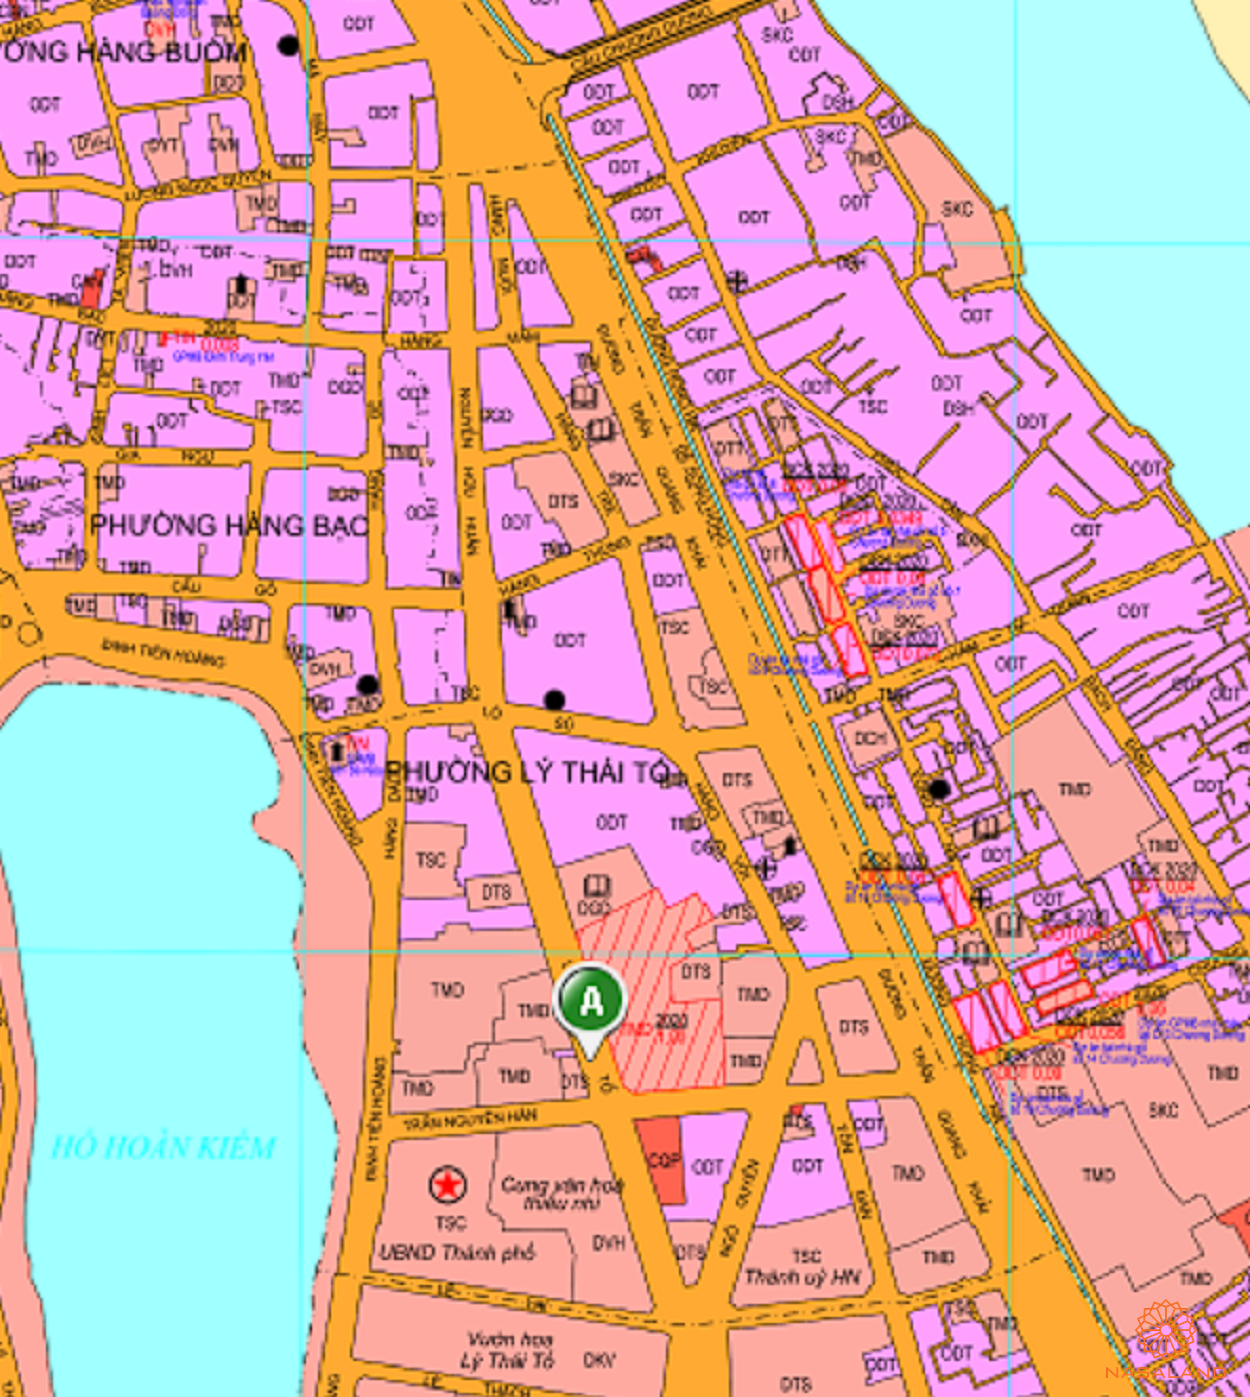 Bản đồ quy hoạch sử dụng đất Phường Lý Thái Tổ theo bản đồ quy hoạch sử dụng đất năm 2020 Quận Hoàn Kiếm, Thành phố Hà Nội.